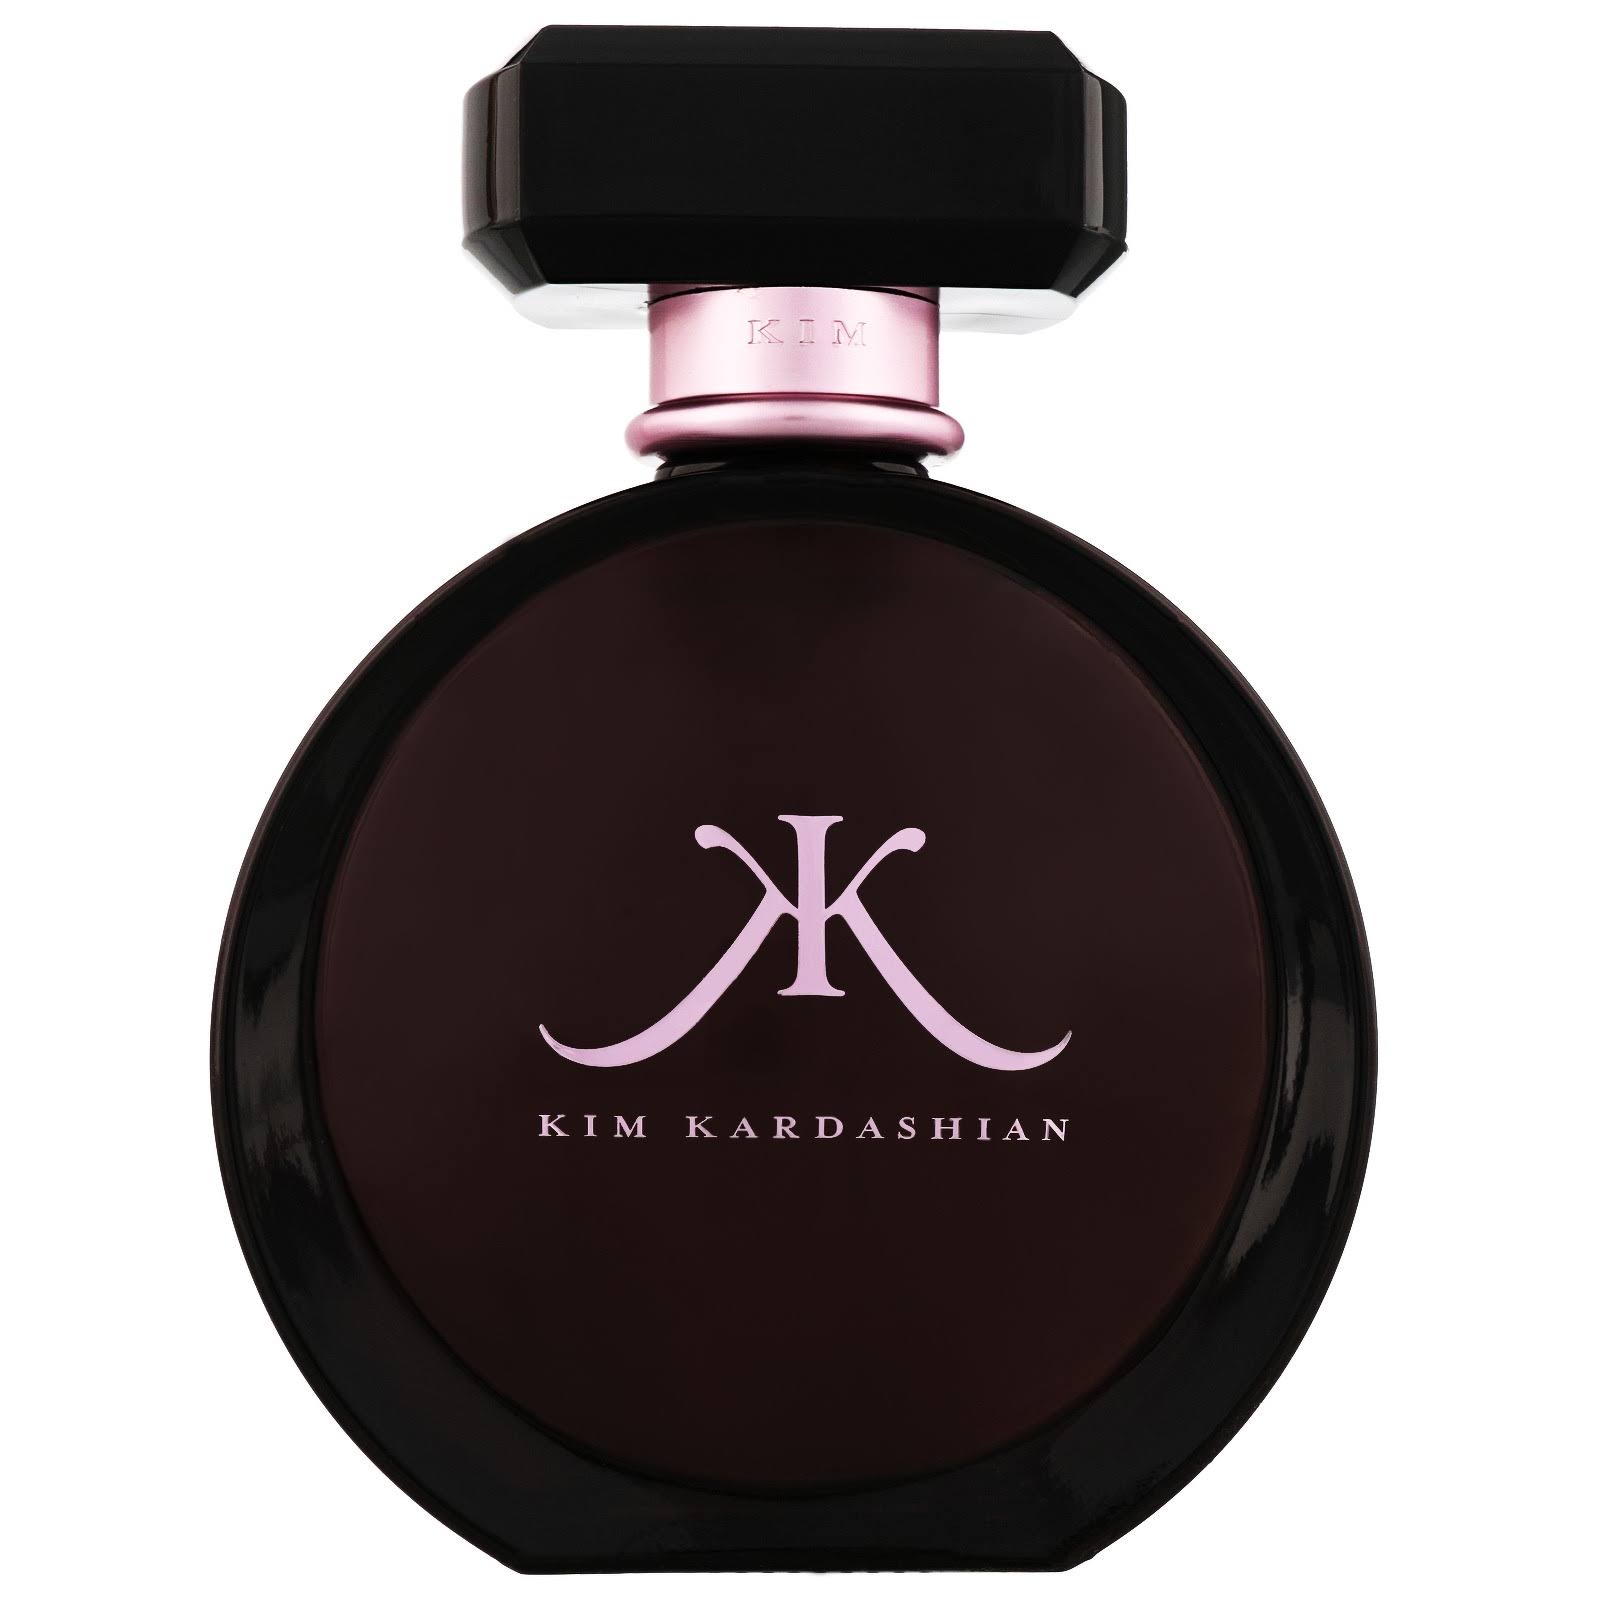 Kim Kardashian by Kim Kardashian Eau de Parfum Spray 3.4 oz (Women)